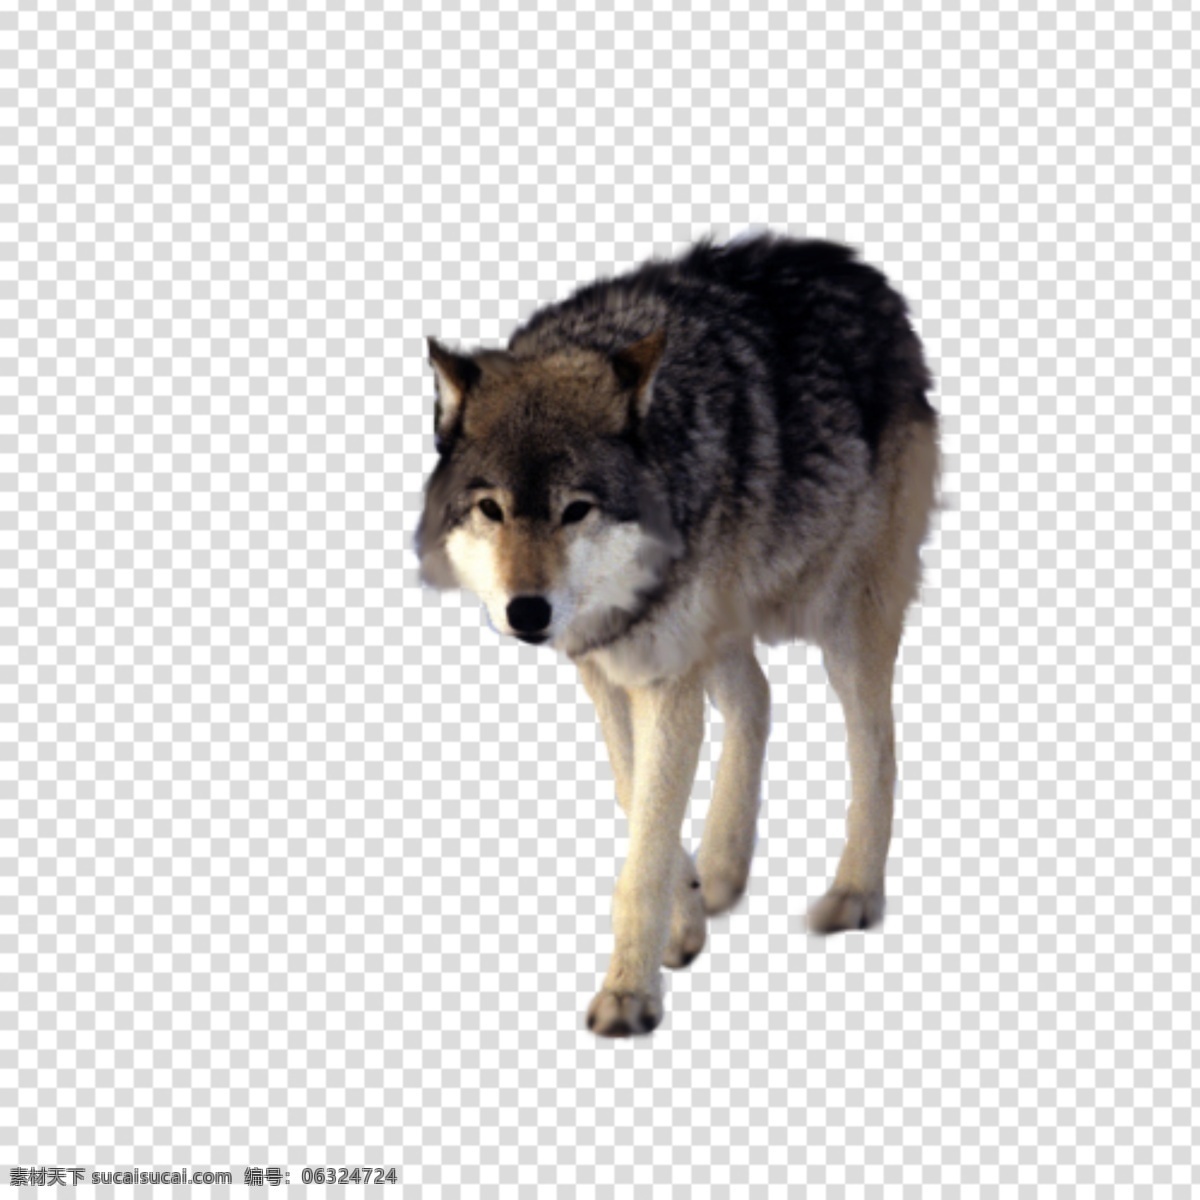 狼图片 狼 狼狗 透明底 动物 免抠图 psd分层图 分层图 免扣 透明 透明背景 动物透明底 分层